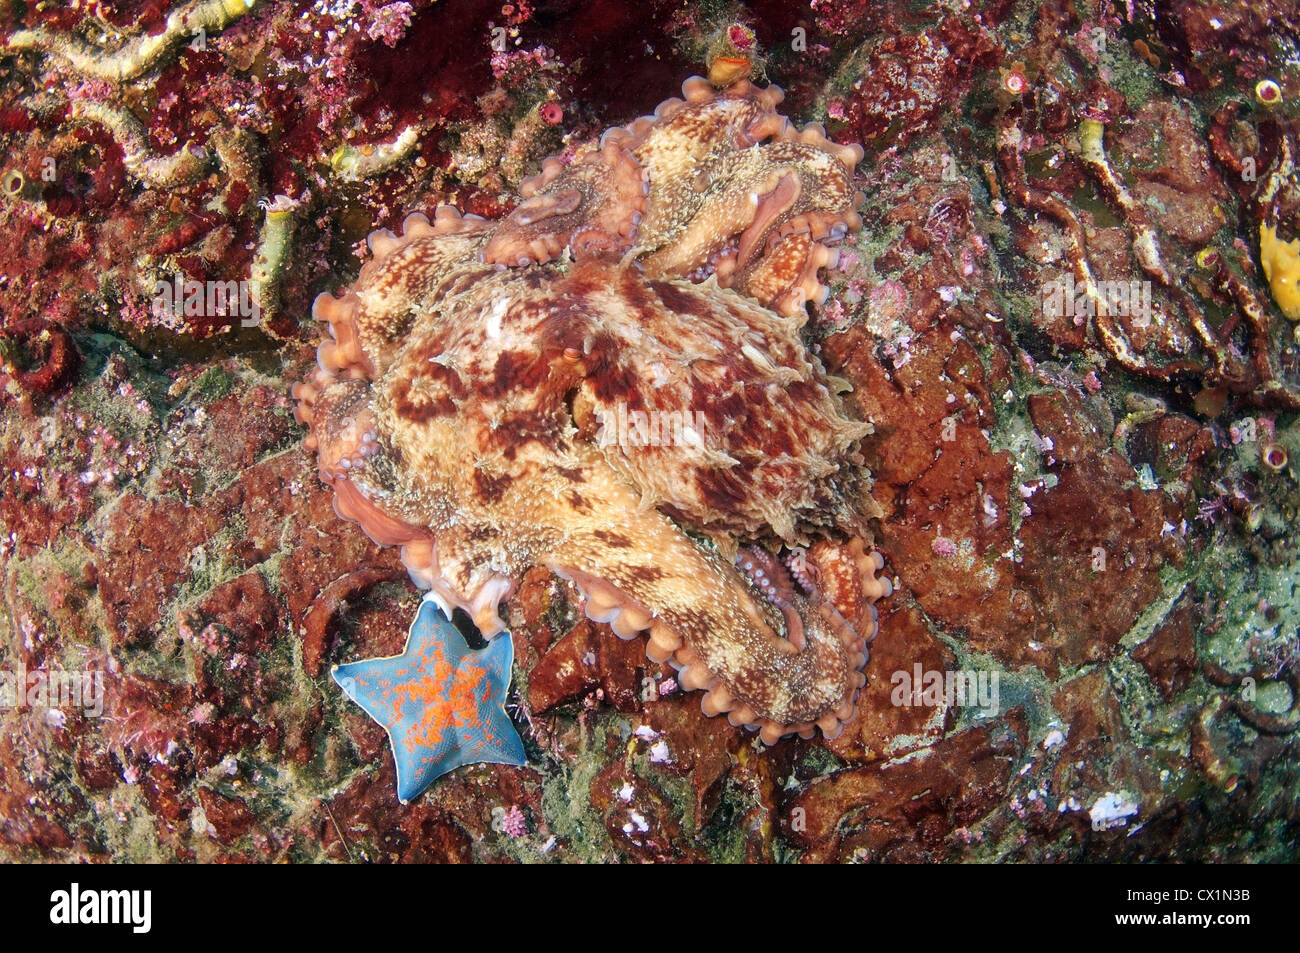 Gigante polpo del Pacifico o del Pacifico del Nord polpo gigante, (Enteroctopus dofleini). Giappone Mare, Estremo Oriente, Primorsky Krai, Russia Foto Stock